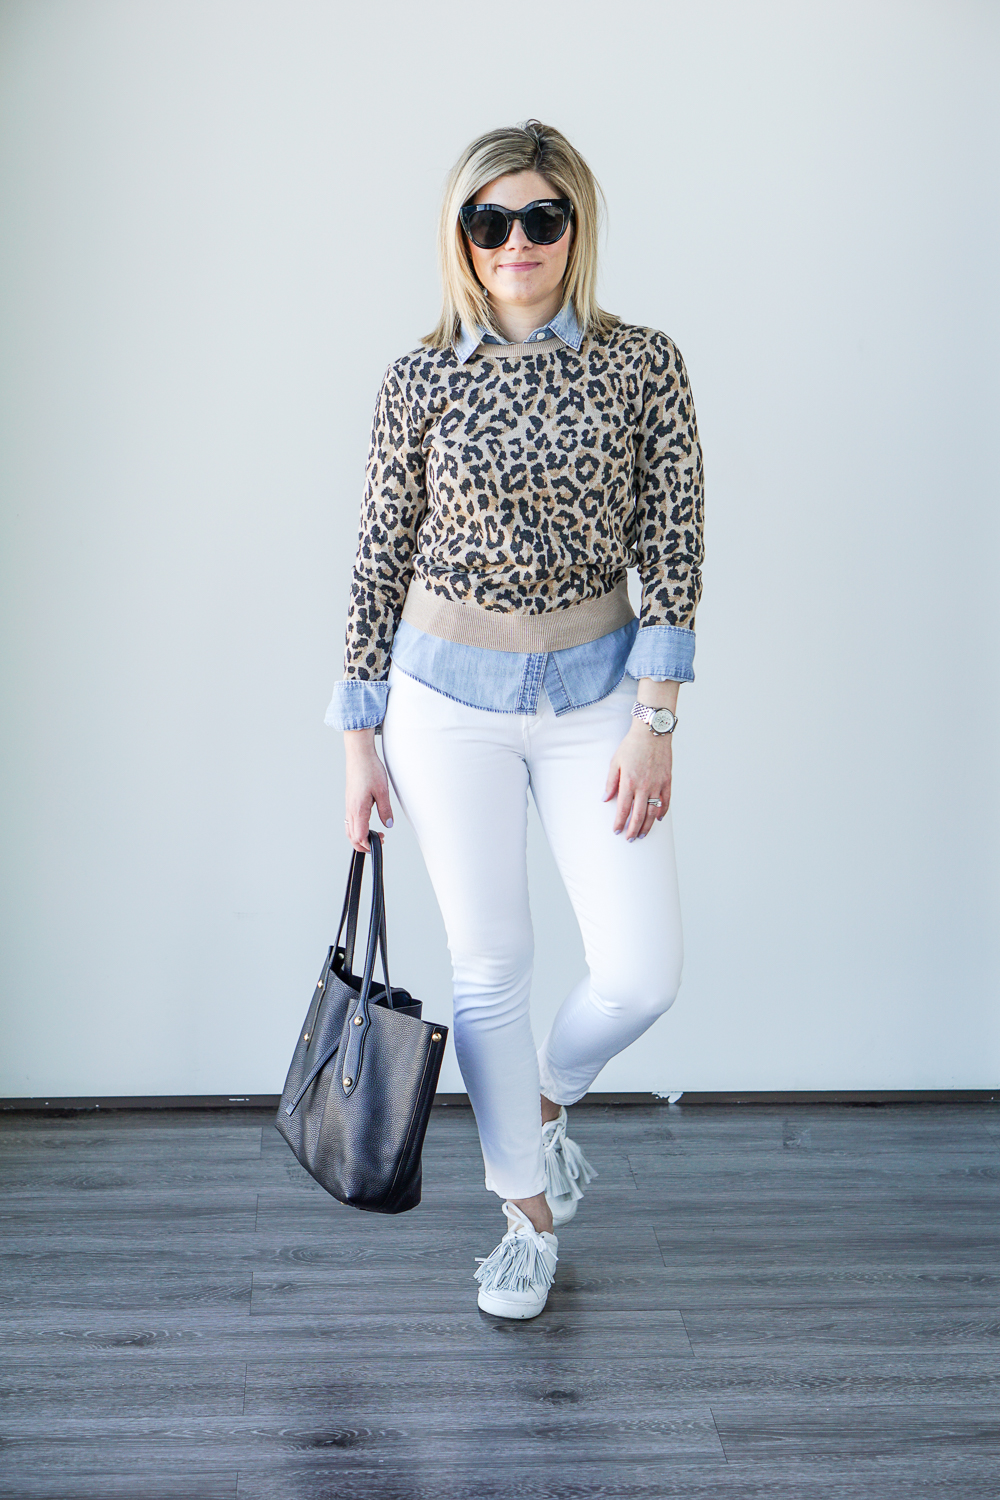 Senreve Mini Maestra Handbag Review - Cashmere & Jeans